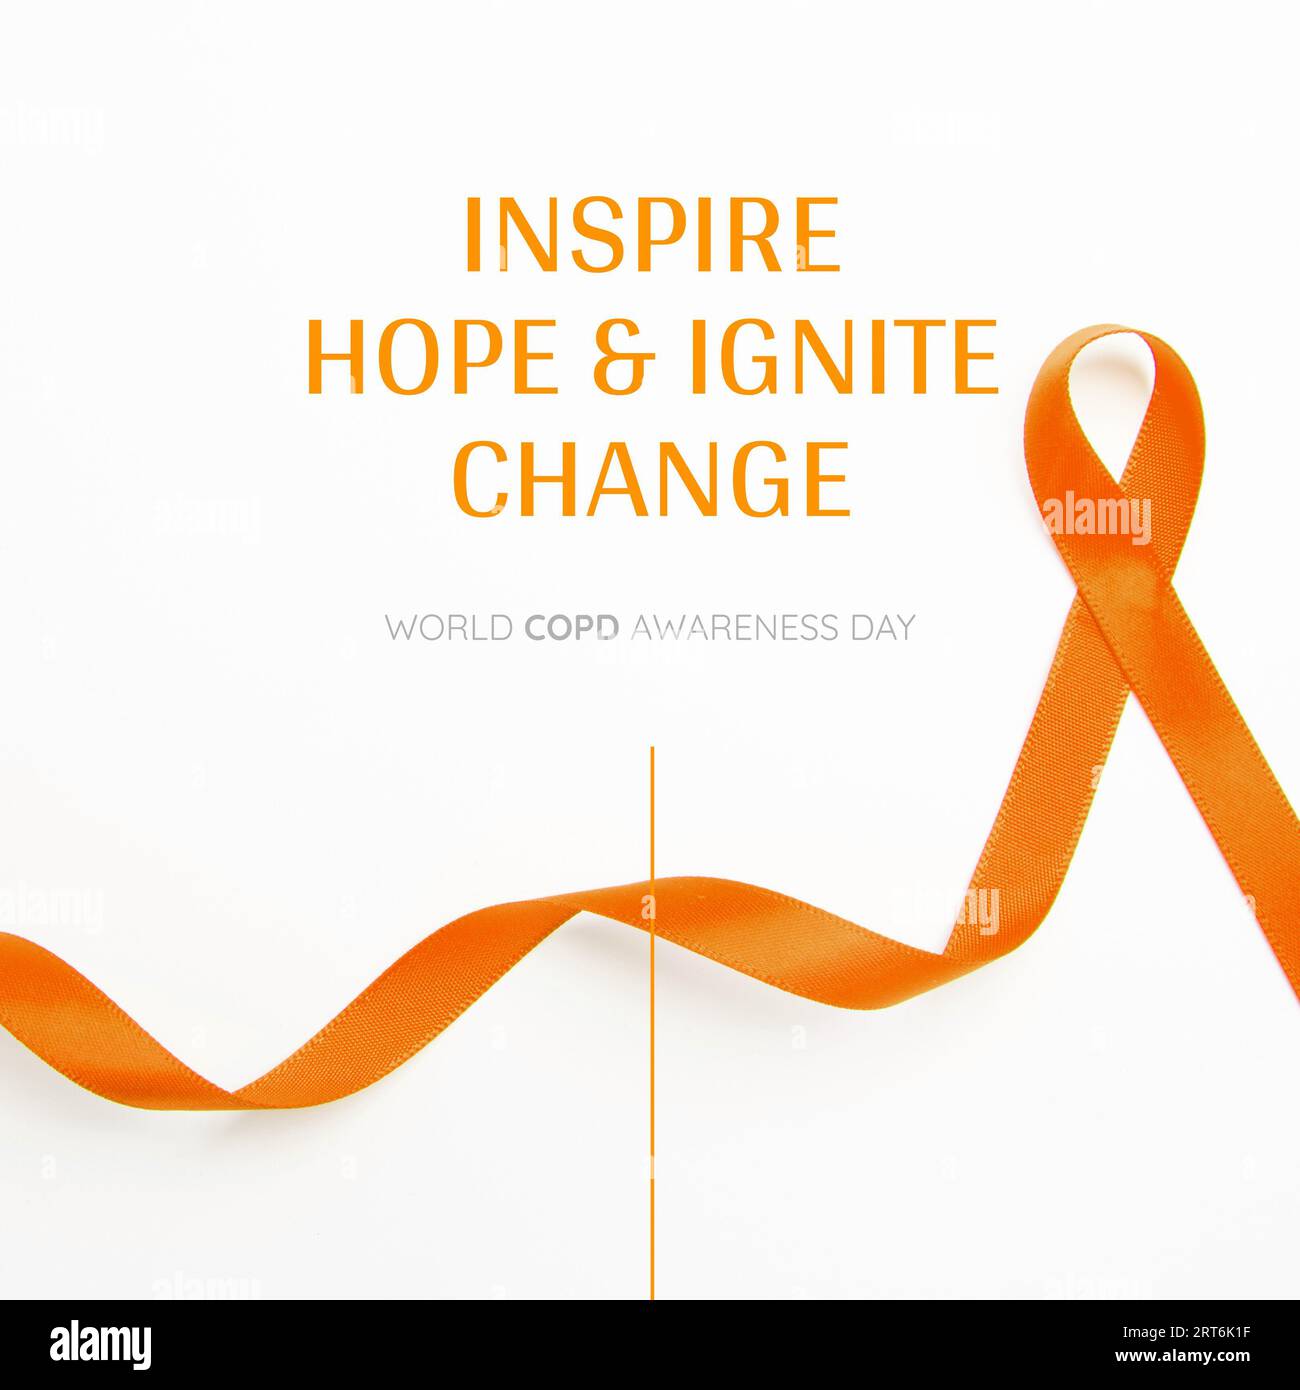 Komposition aus orangefarbenem Awareness-Band, Inspiration für Hoffnung und Veränderung, Text zum World copd Awareness Day Stockfoto